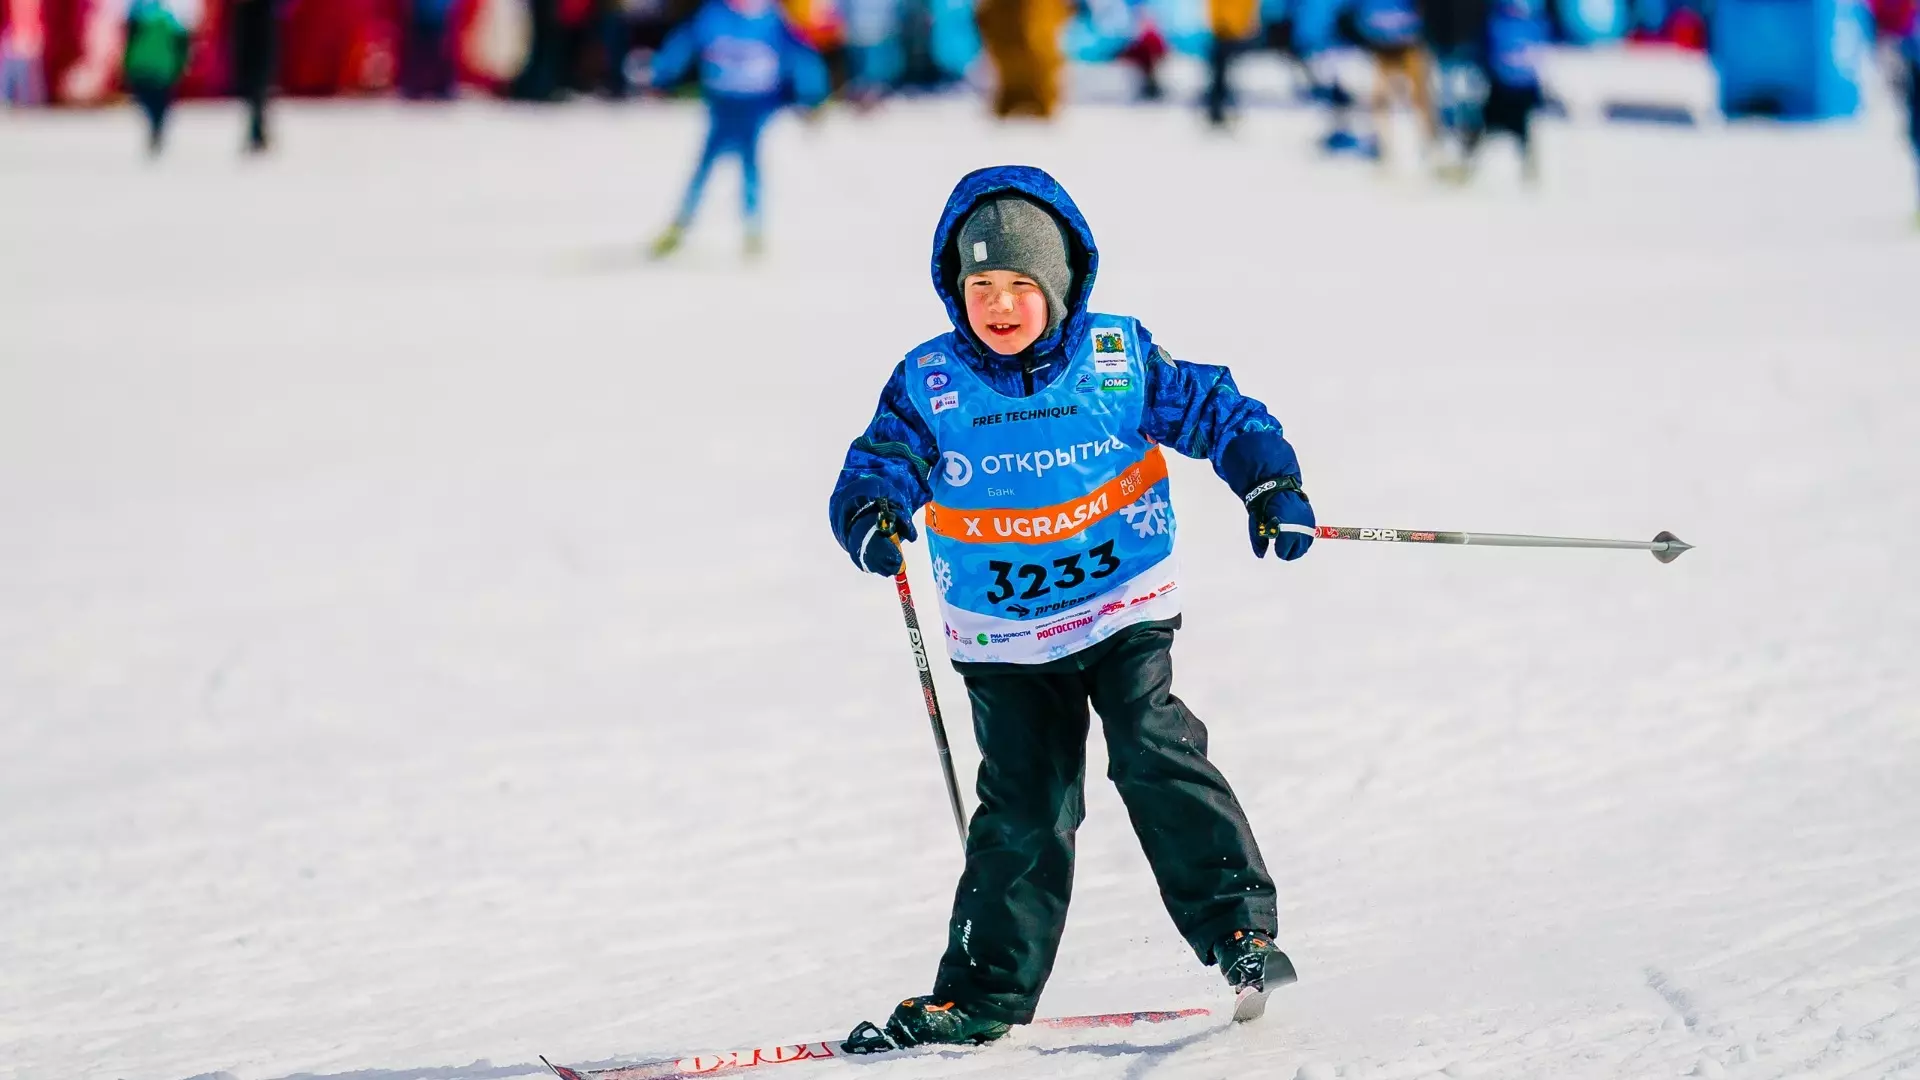 Организаторы Югорского лыжного марафона объявили размер призового фонда